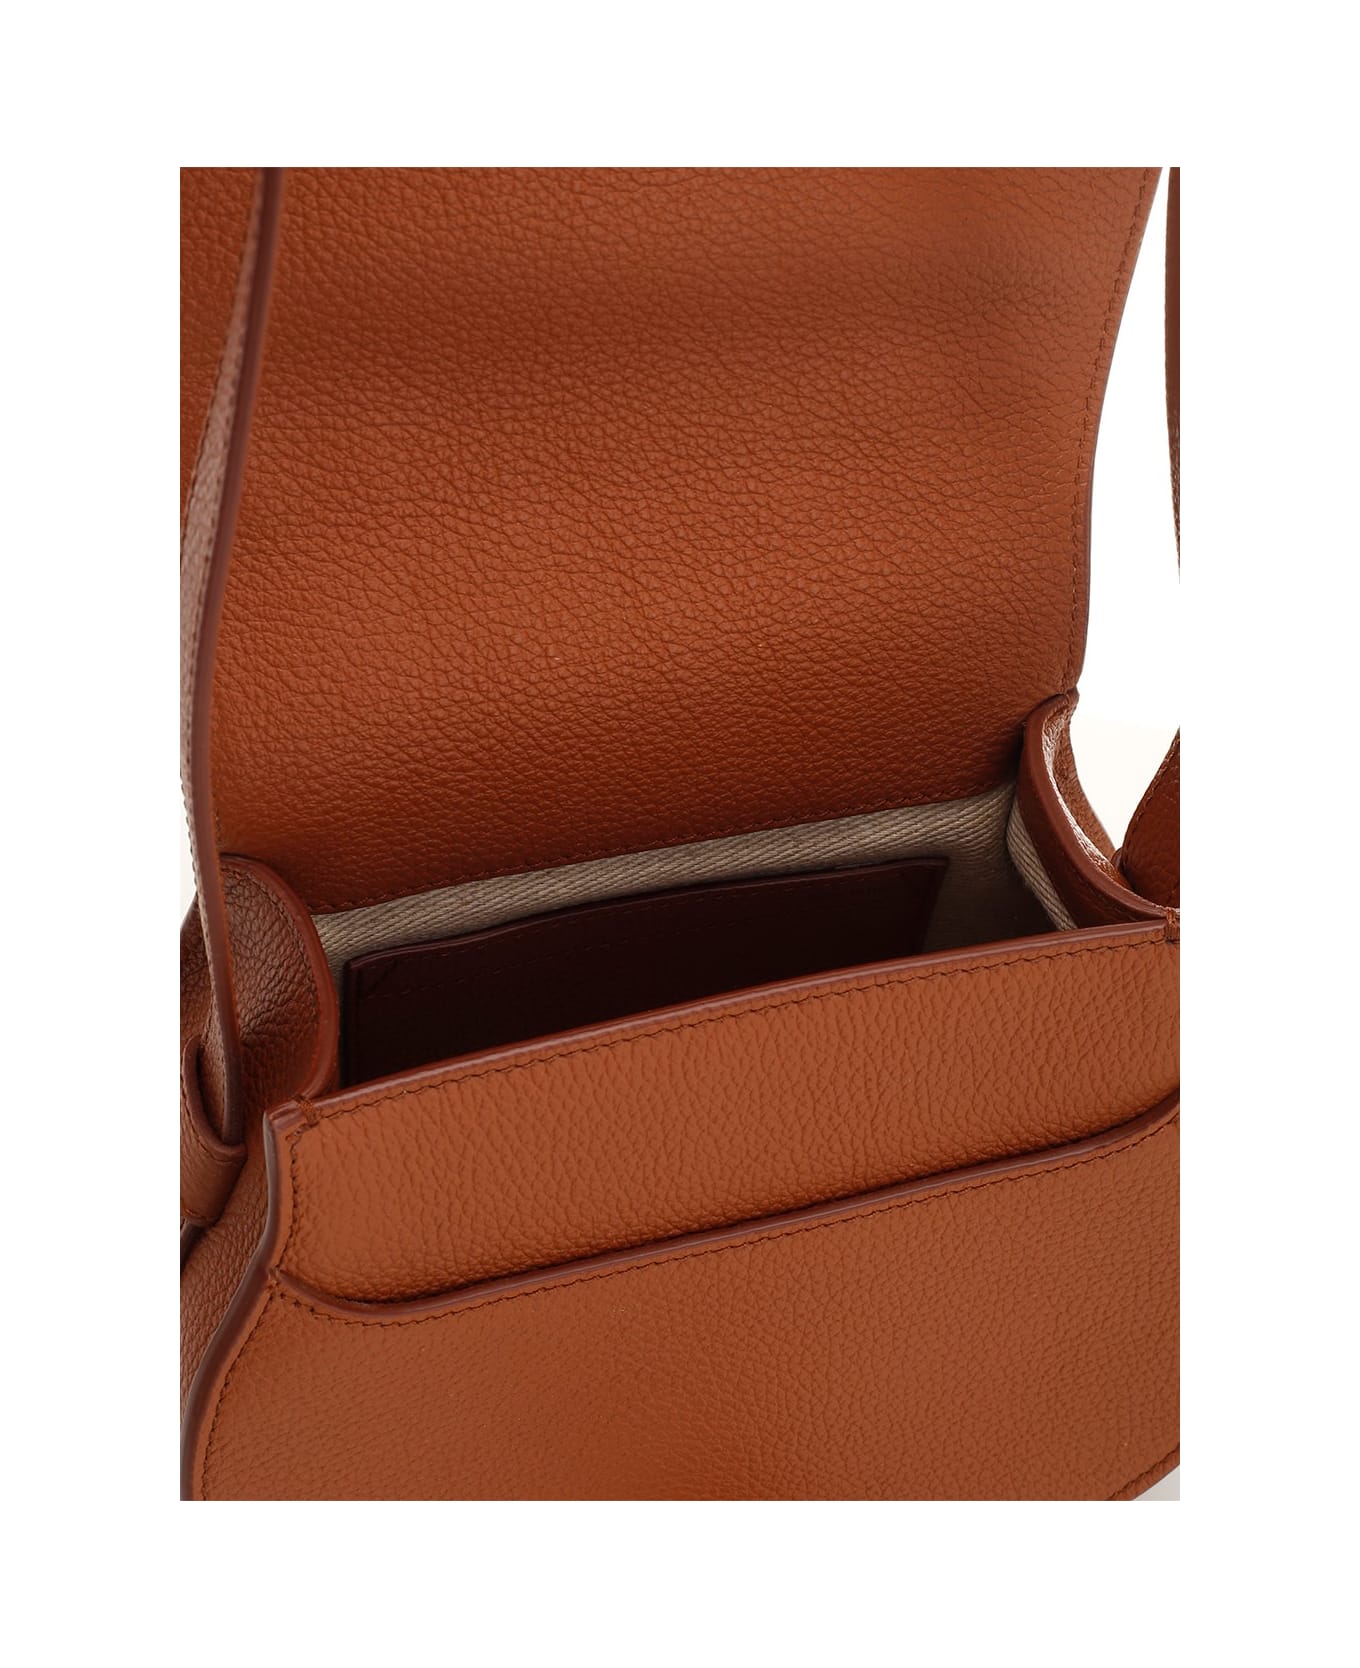 Chloé 'marcie' Shoulder Bag - Leather Brown